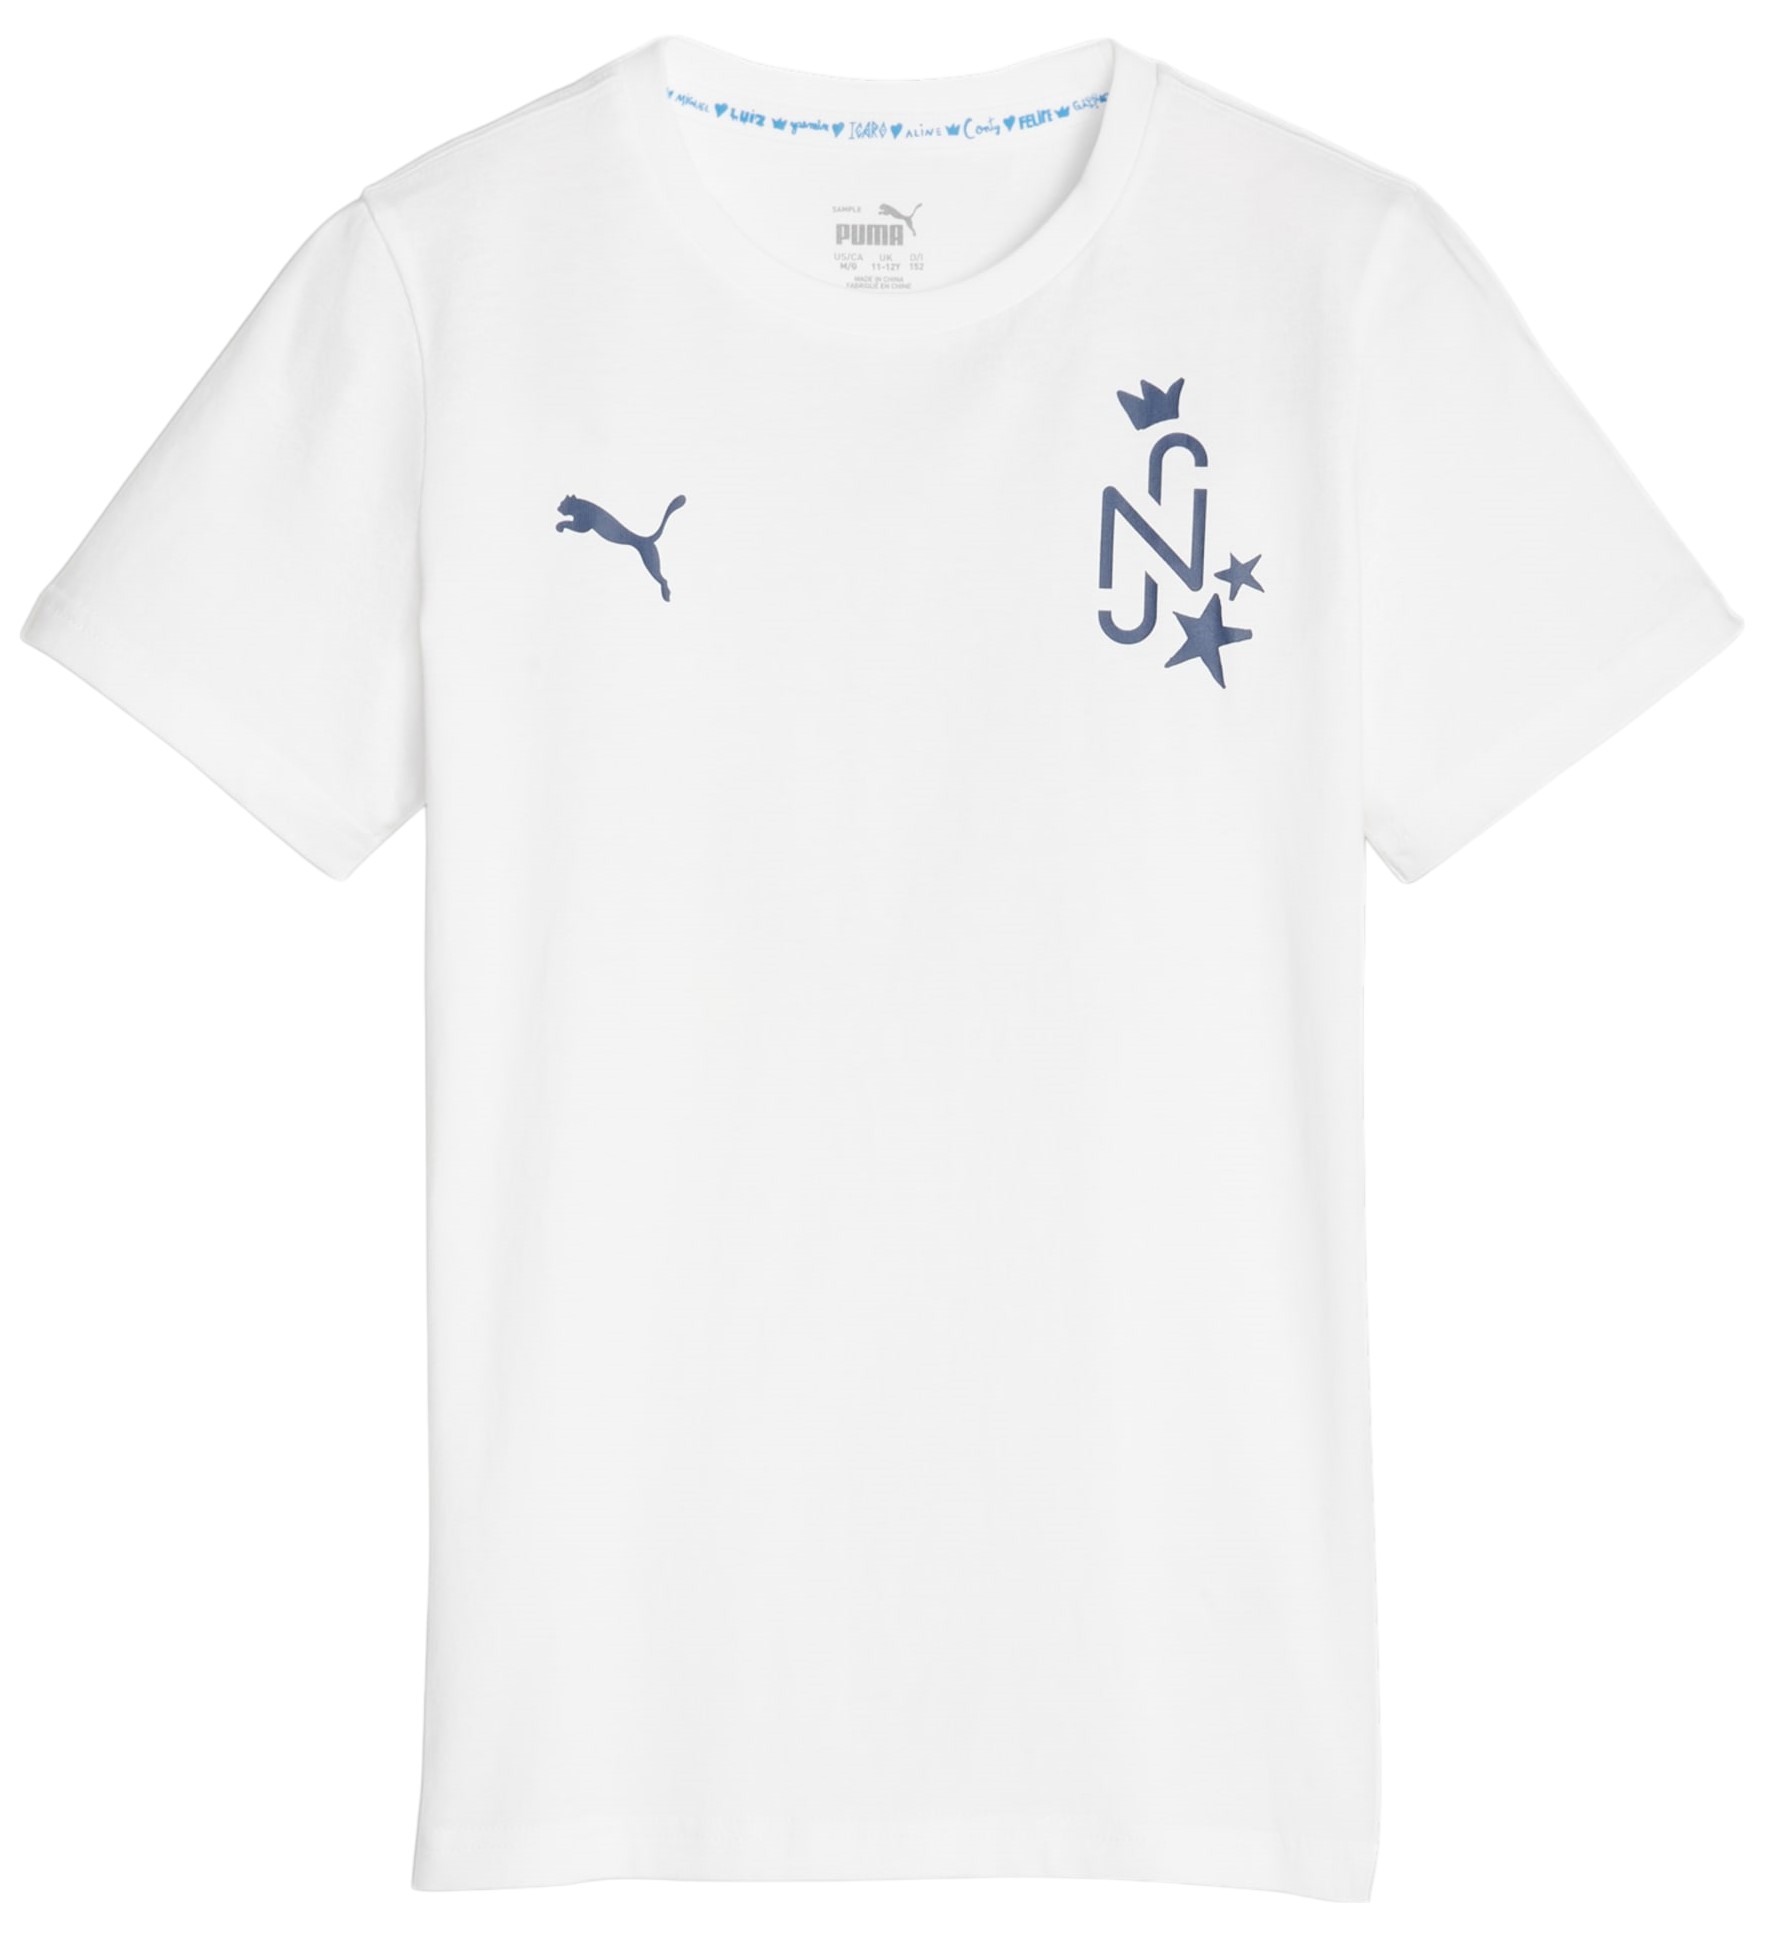 Camiseta Puma Neymar Jr Youth Football Tee